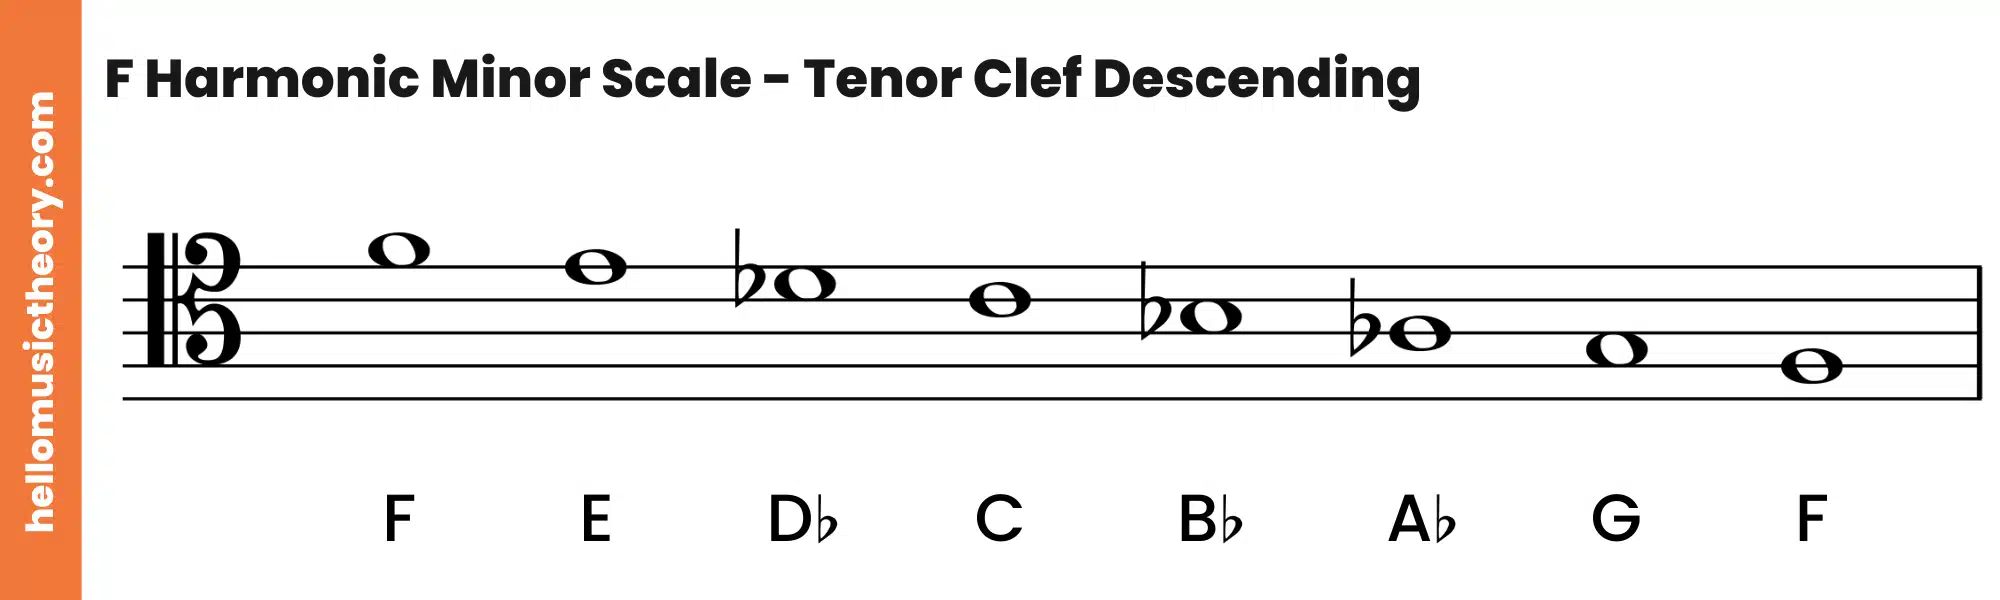 F Harmonic Minor Scale Tenor Clef Descending